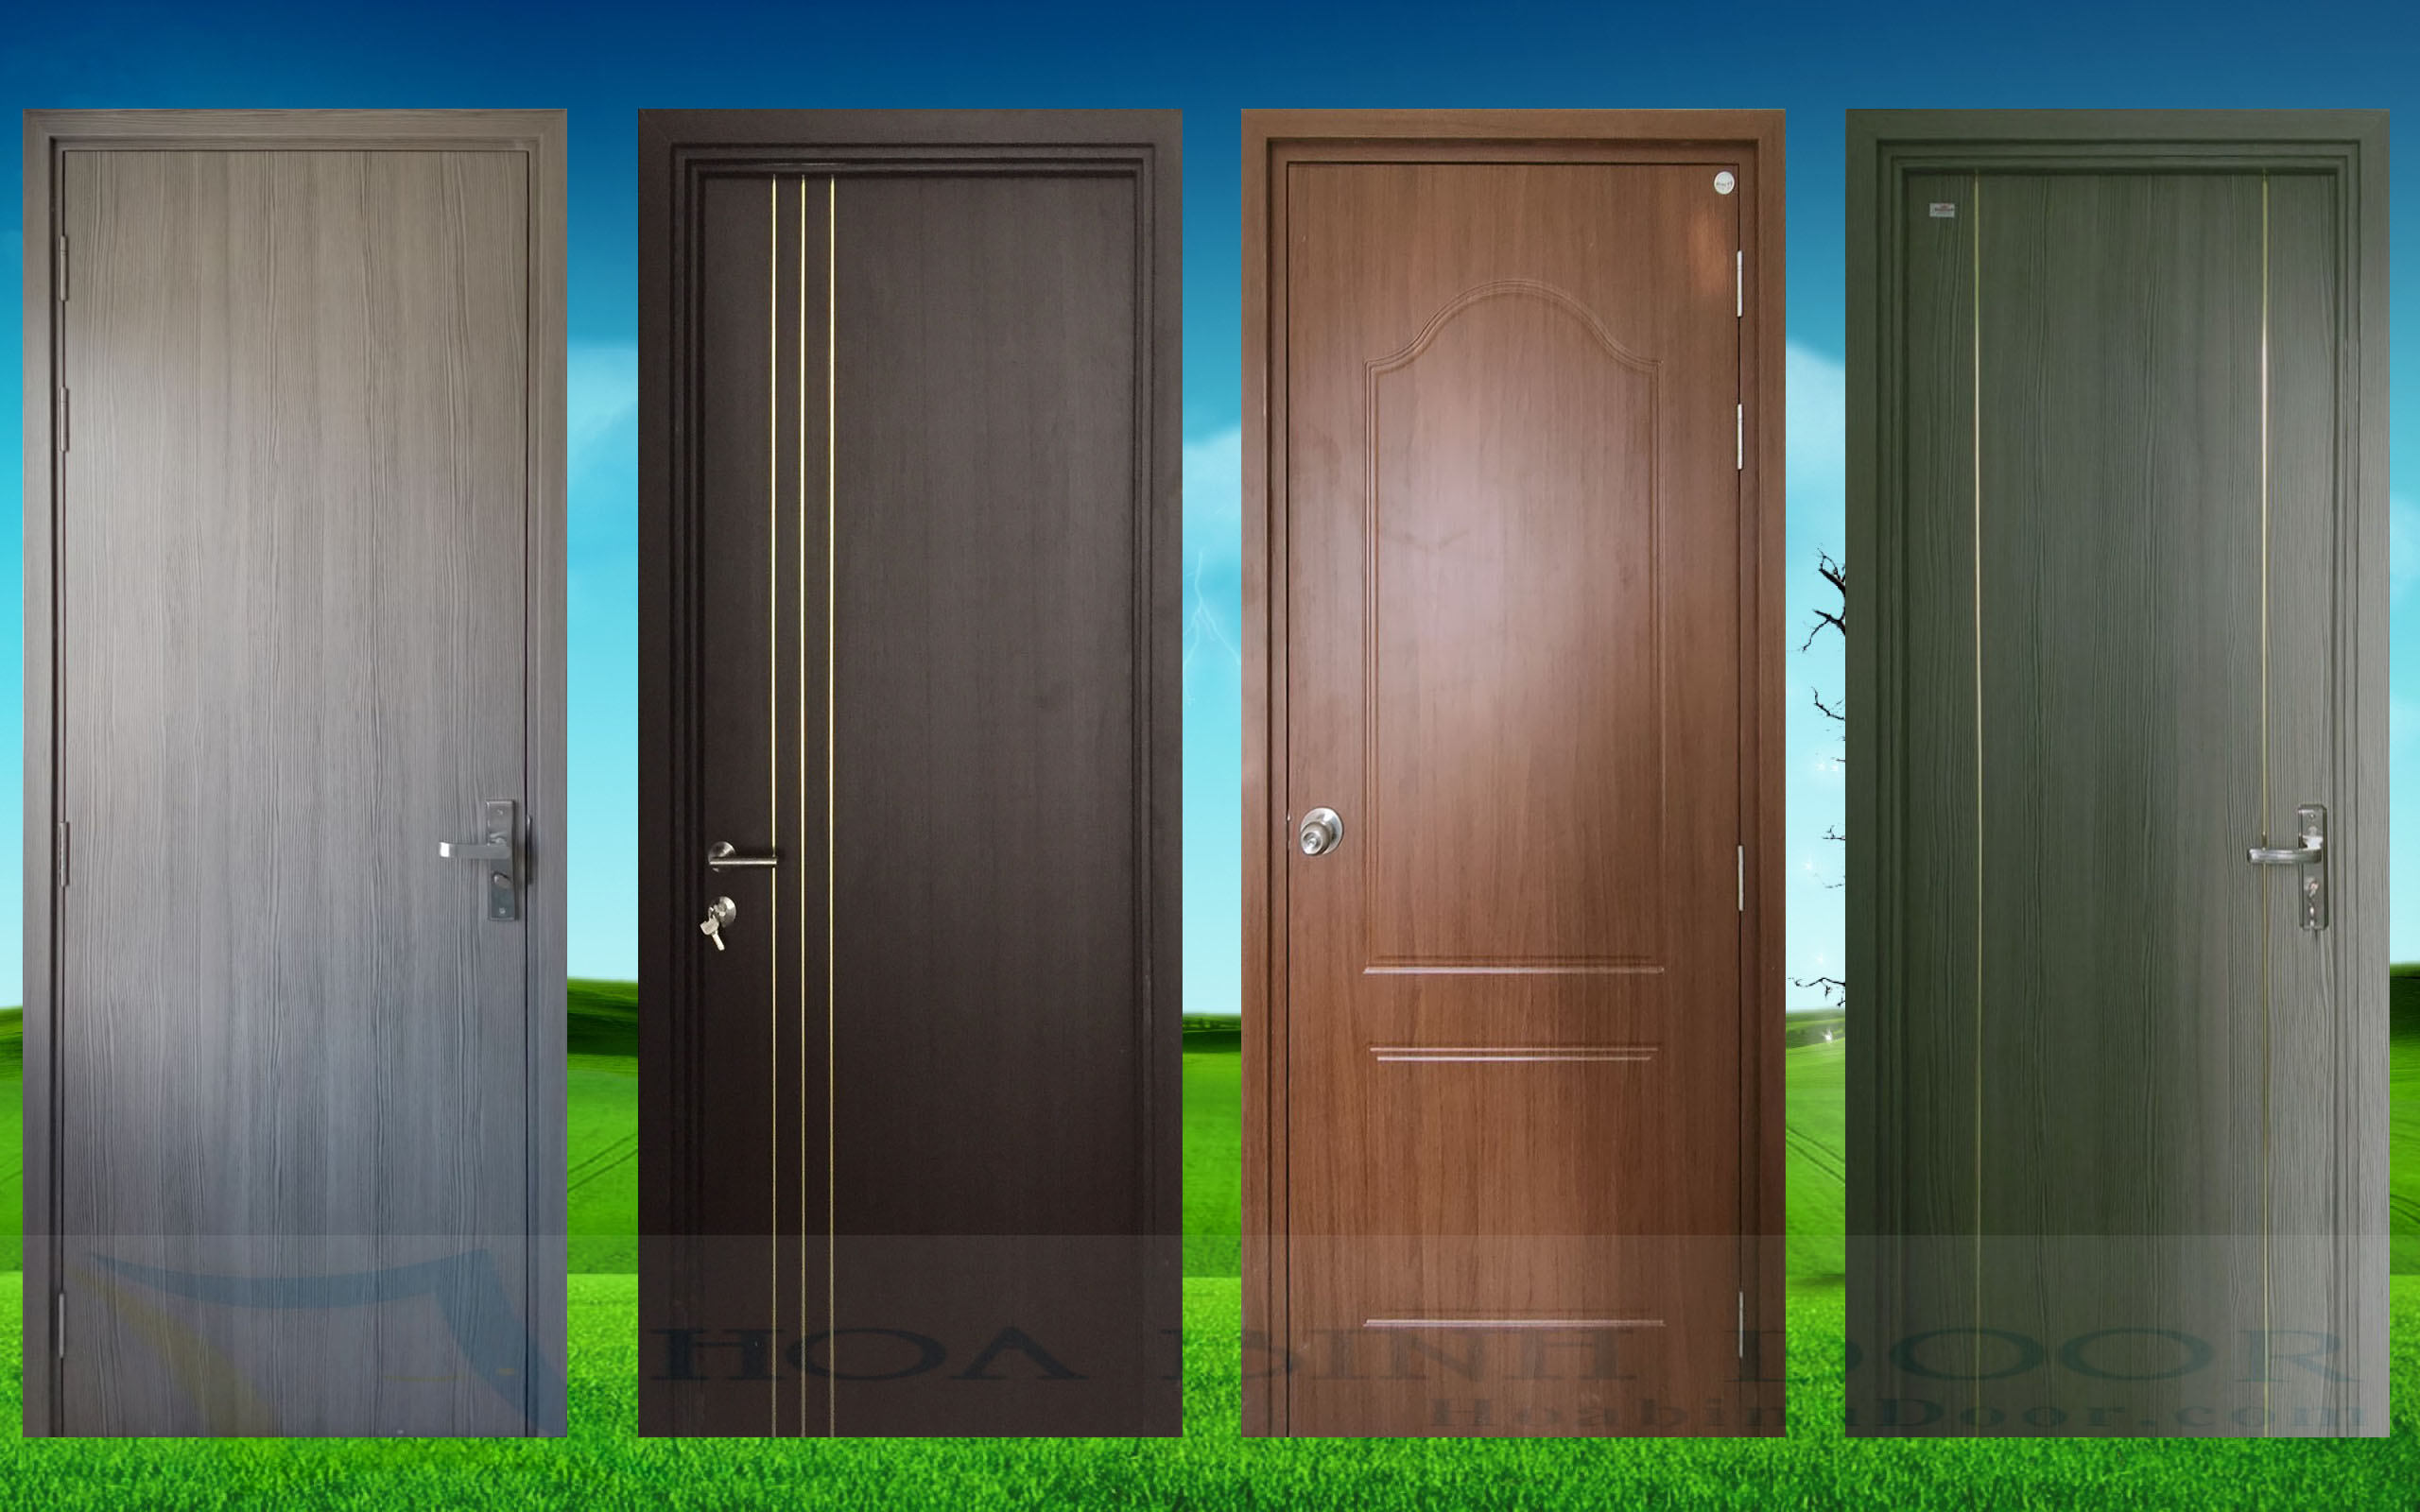 Cửa nhựa composite giả gỗ đã trở thành lựa chọn ưa thích của nhiều gia đình với vẻ ngoài giống gỗ tự nhiên nhưng lại có độ bền cao hơn và không bị mối mọt. Năm 2024, những chiếc cửa nhựa giả gỗ đó sẽ được làm màu sắc đa dạng hơn để phù hợp với nhiều phong cách thiết kế nhà ở.